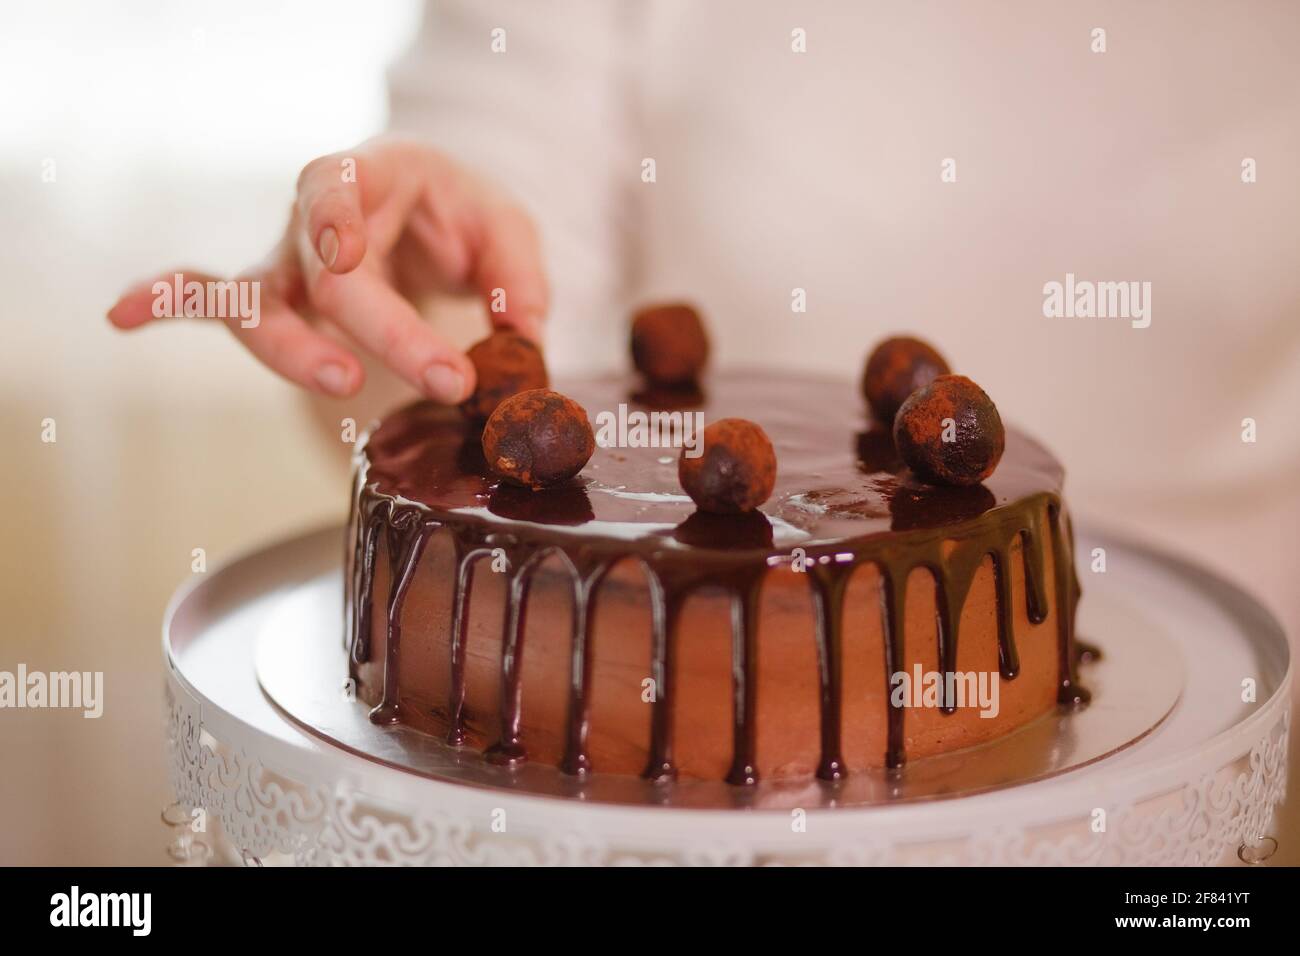 Deliciosos pasteles, pastel de chocolate, chocolate, dulces hechos a mano Foto de stock